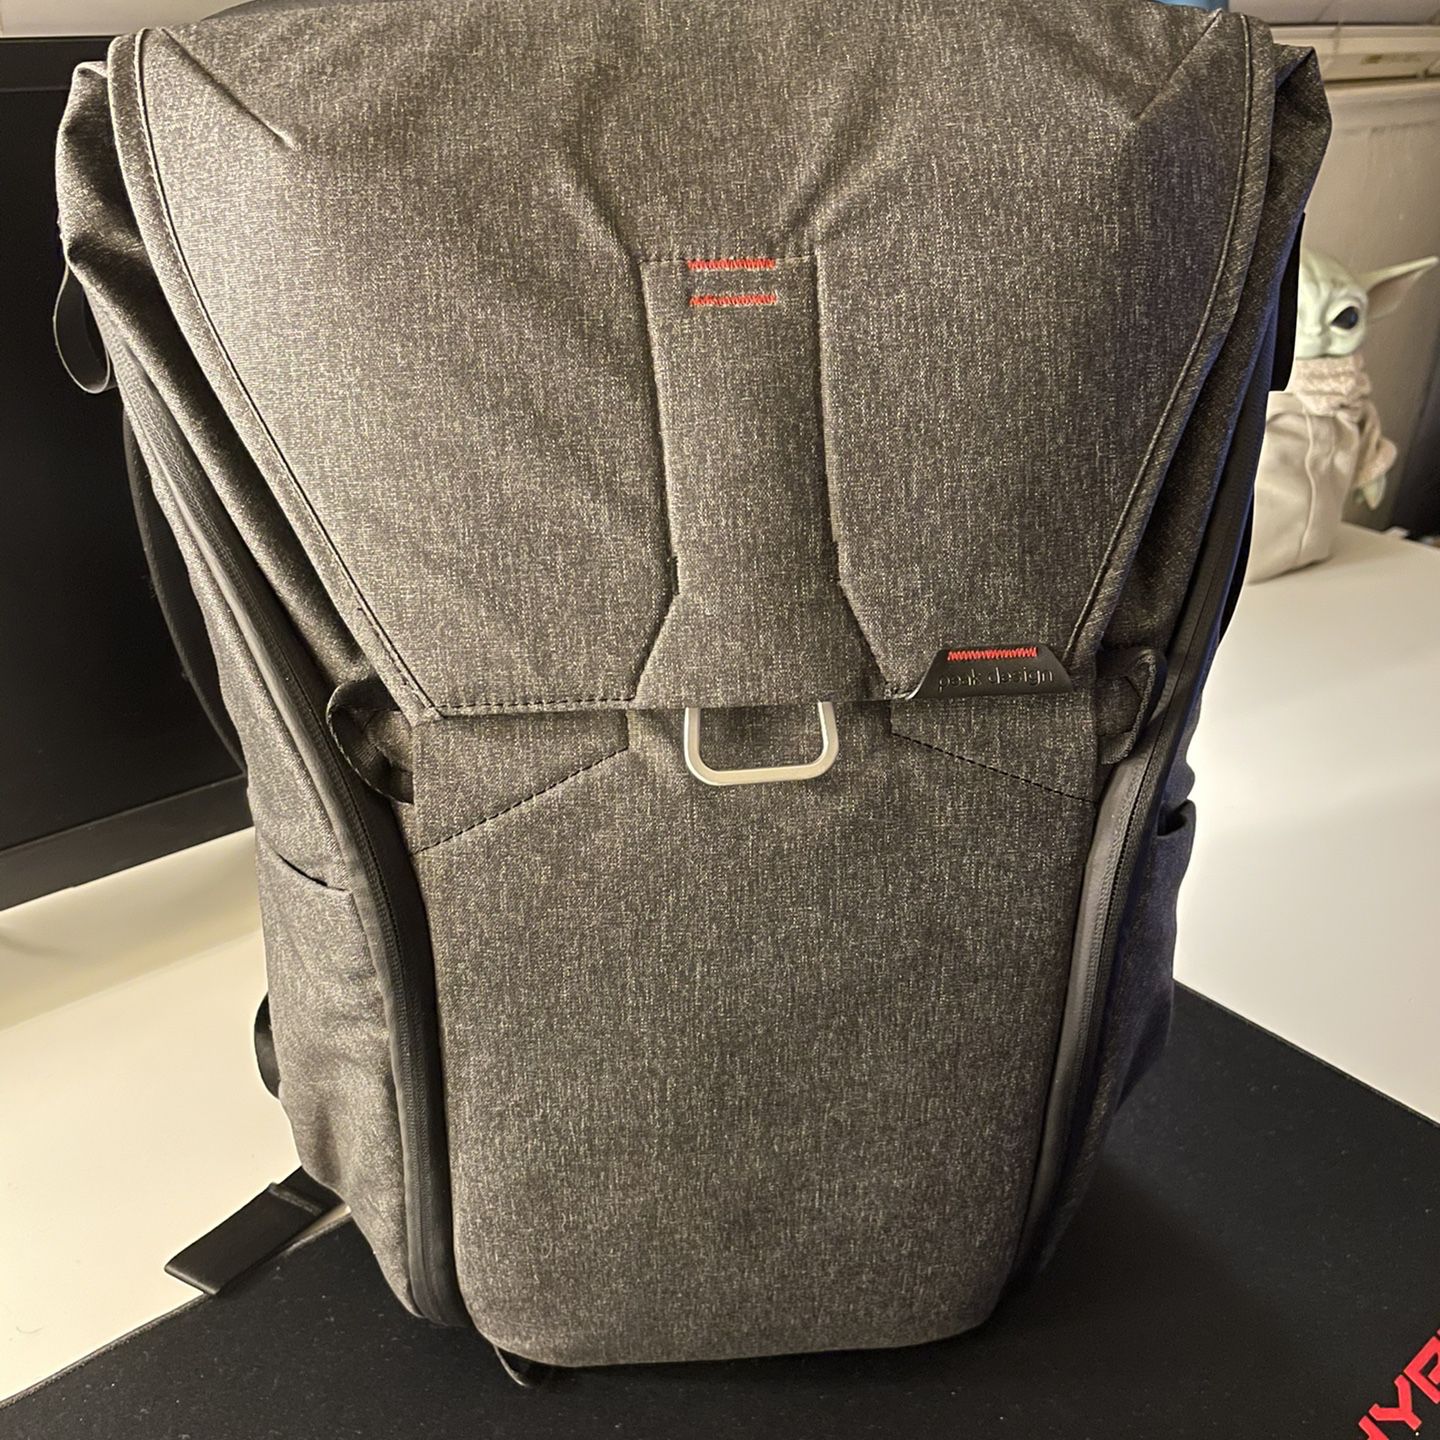 Peak Design Everyday Backpack 30L